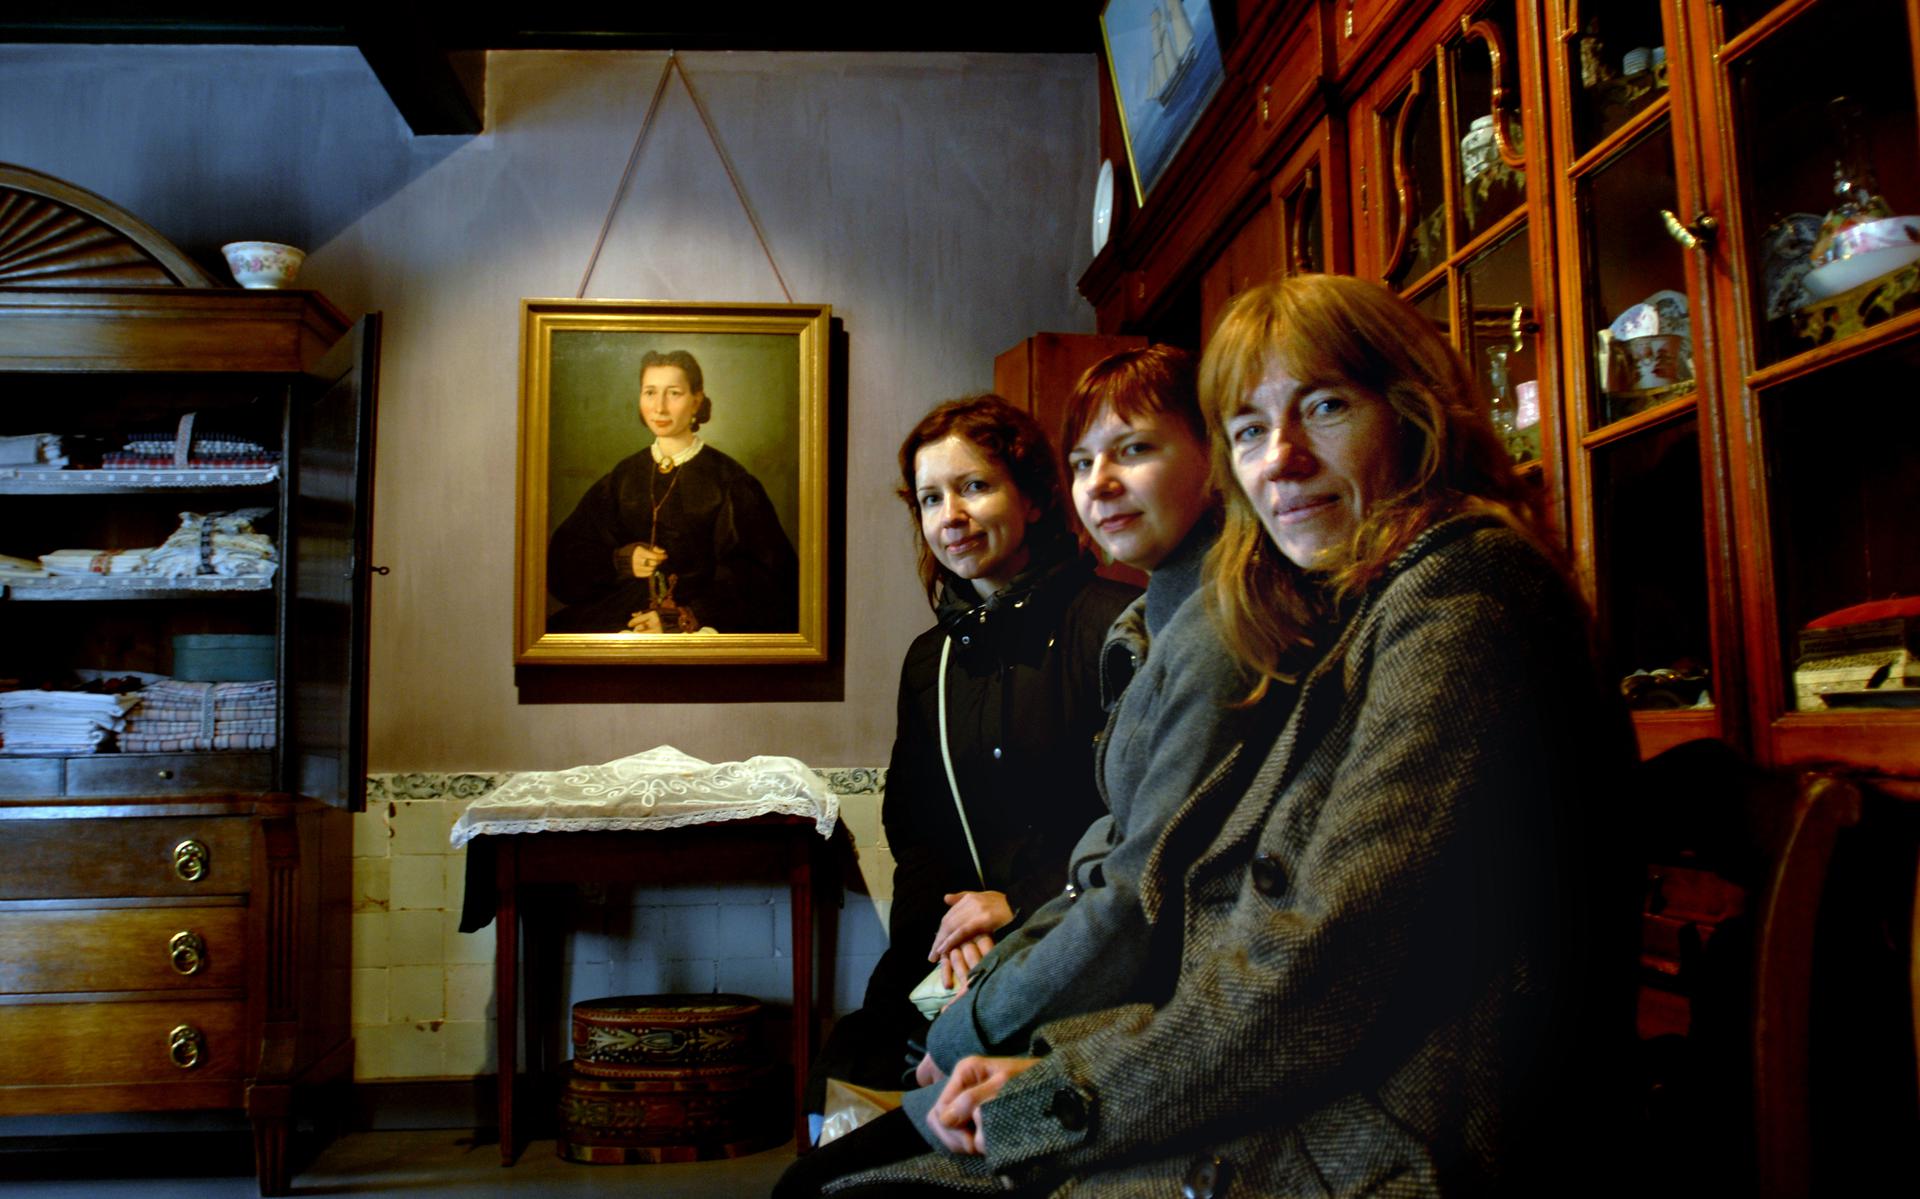 Op uitnodiging van het Veenkoloniaal Museum zijn 3 Letse dames van een museum uit Riga in Groningen. Van voor naar achteren: Ilona Audere, Ilze Brauna en Iveta Putane.